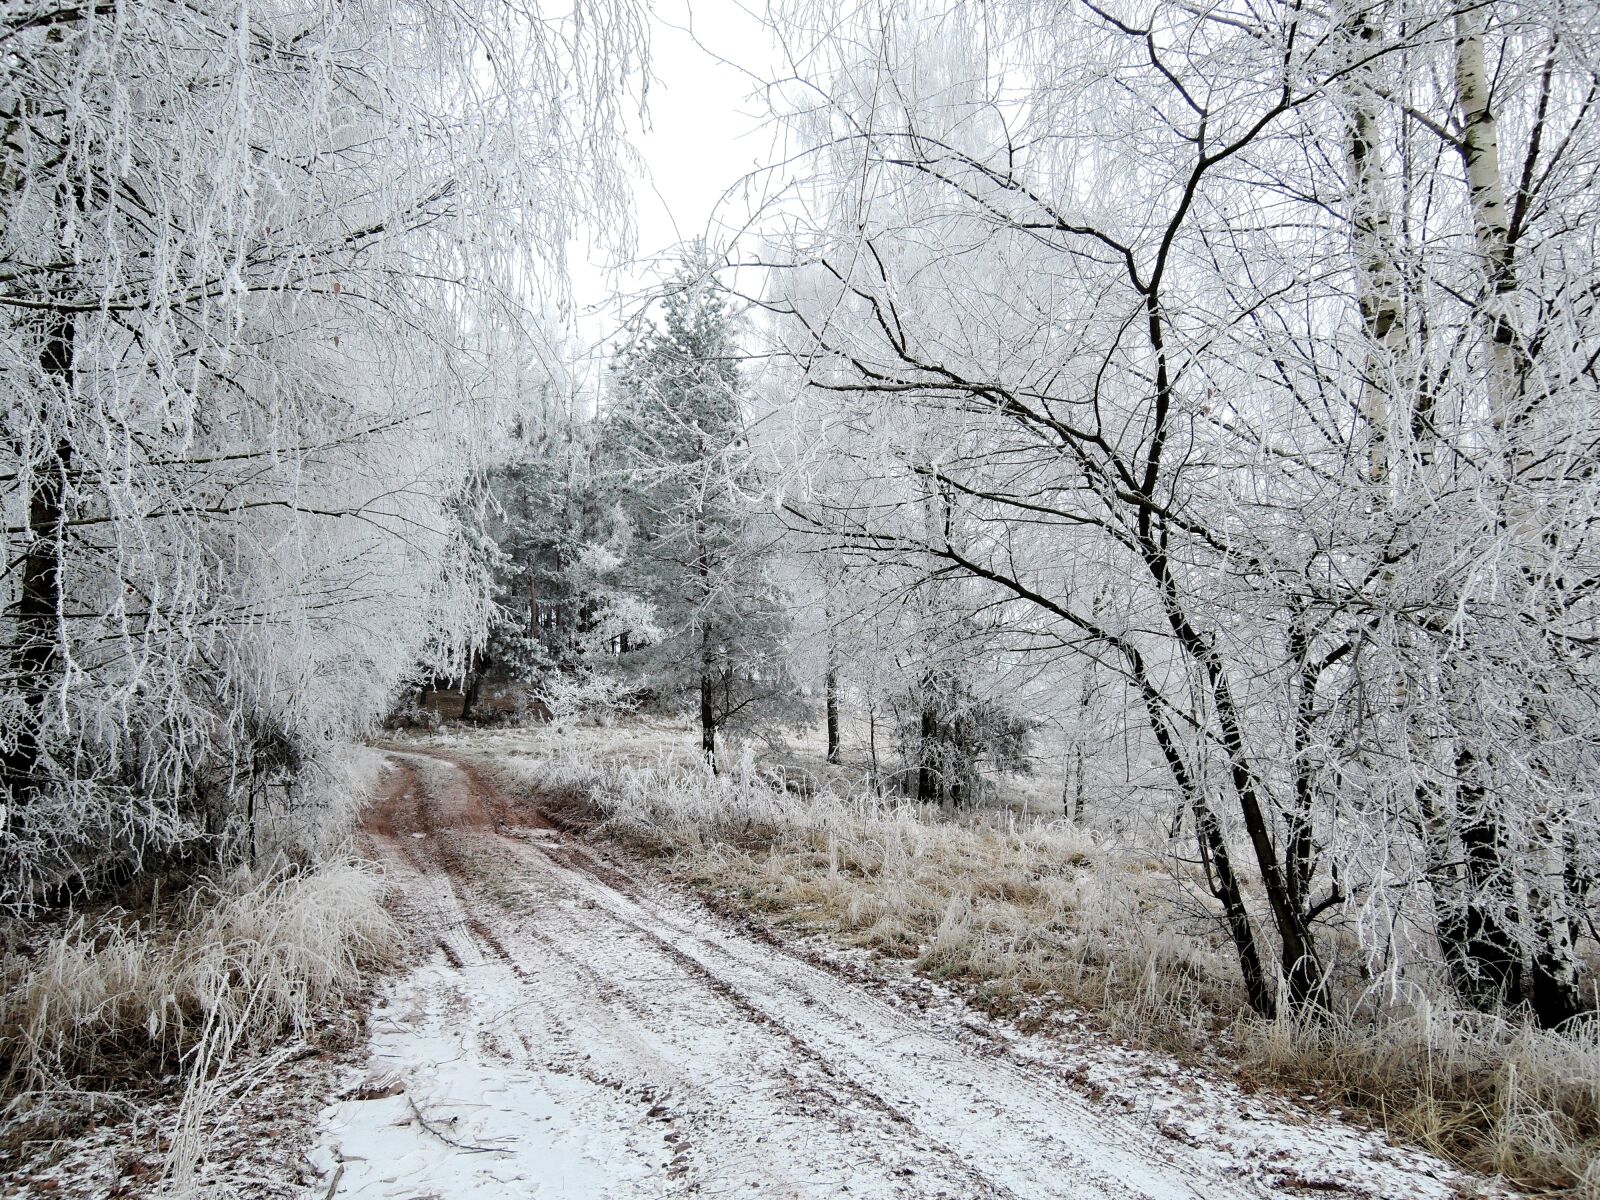 Nikon Coolpix P340 sample photo. Winter, landscape, view photography